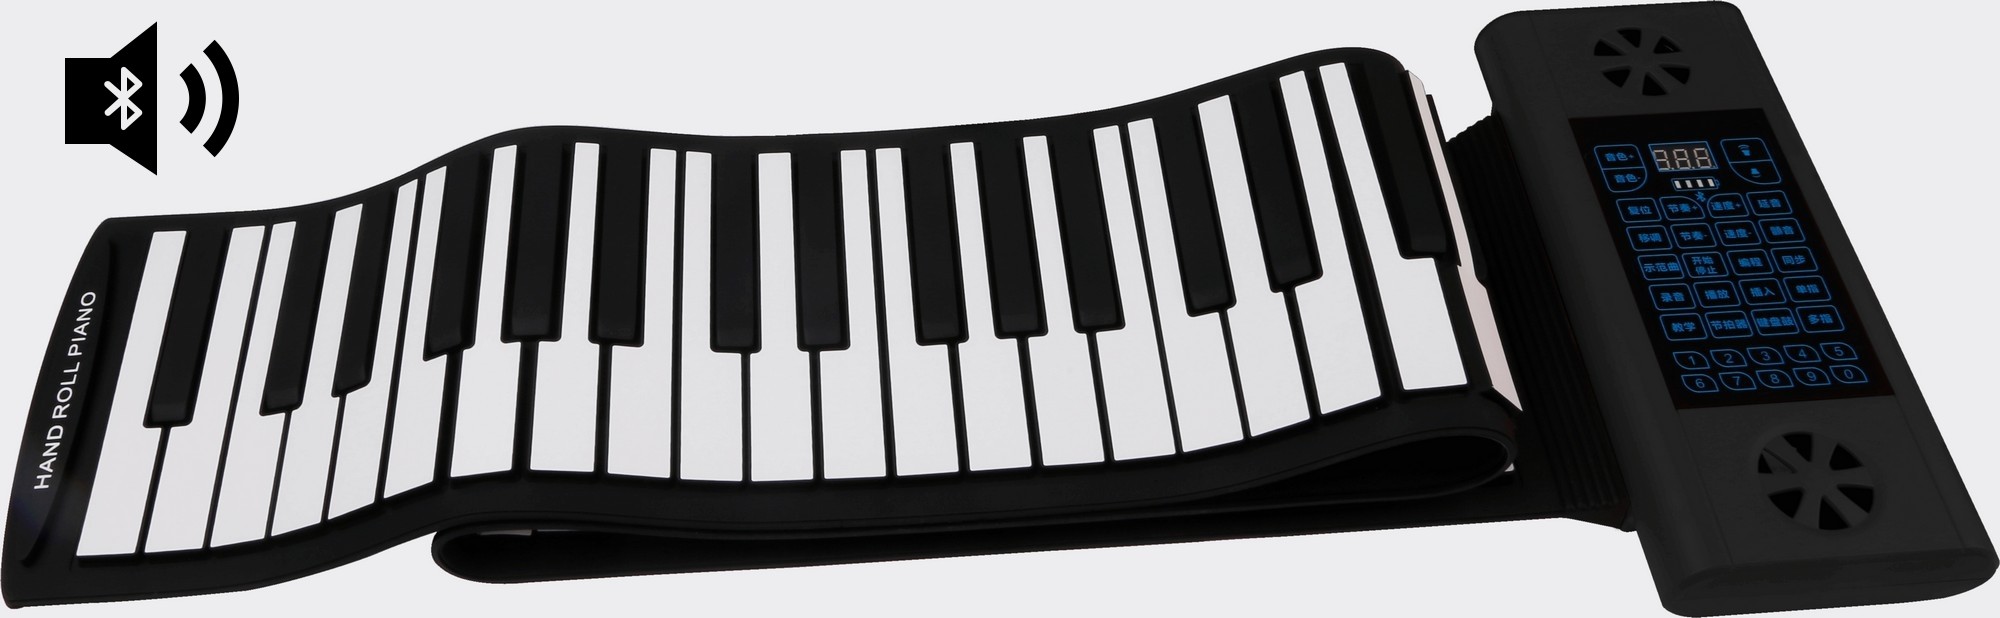 Clavier en silicone piano enroulable avec 88 touches + haut